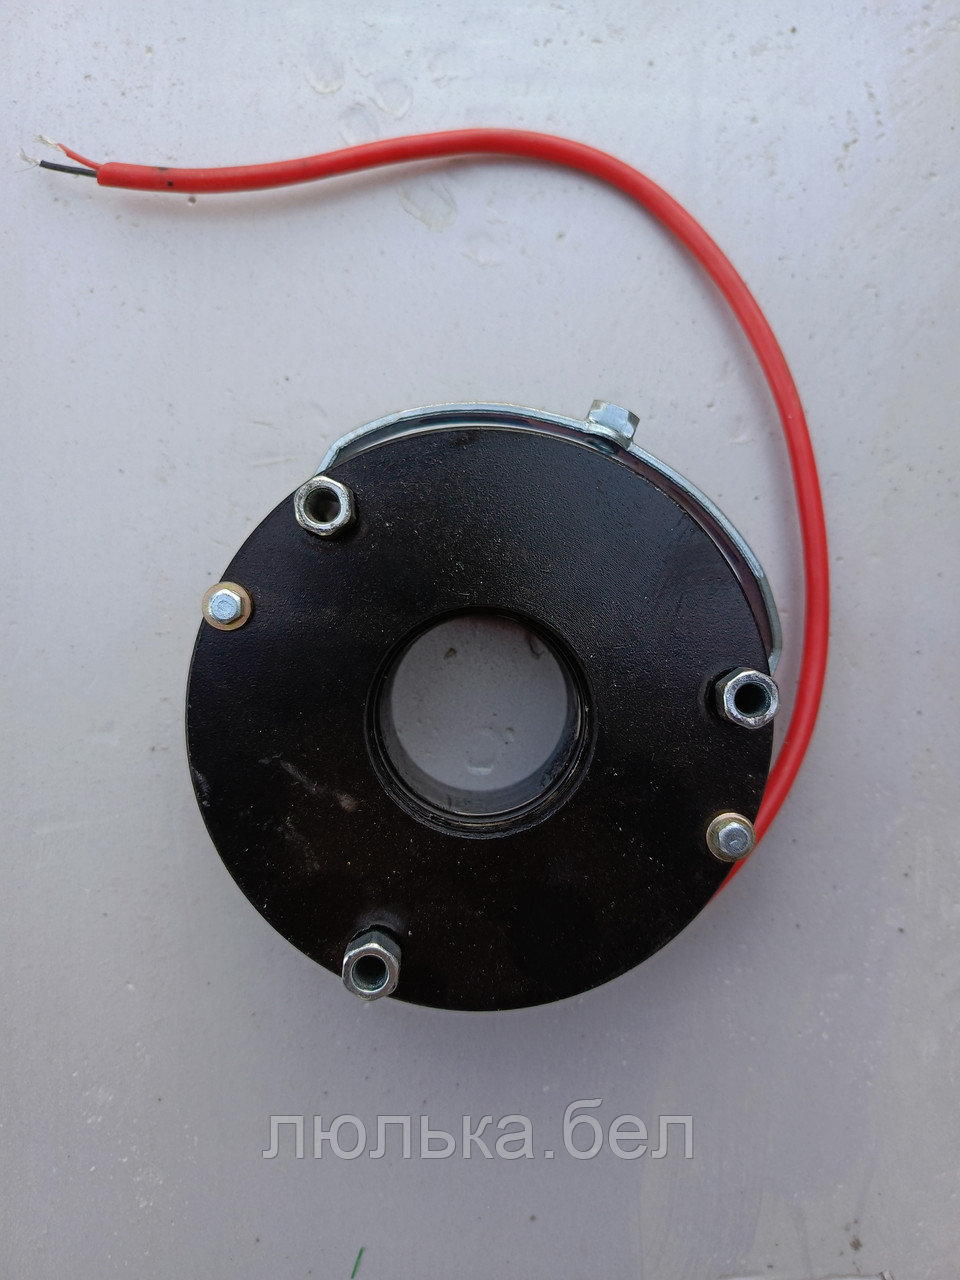 Электромагнитный тормоз к люльке фасадной ZLP630